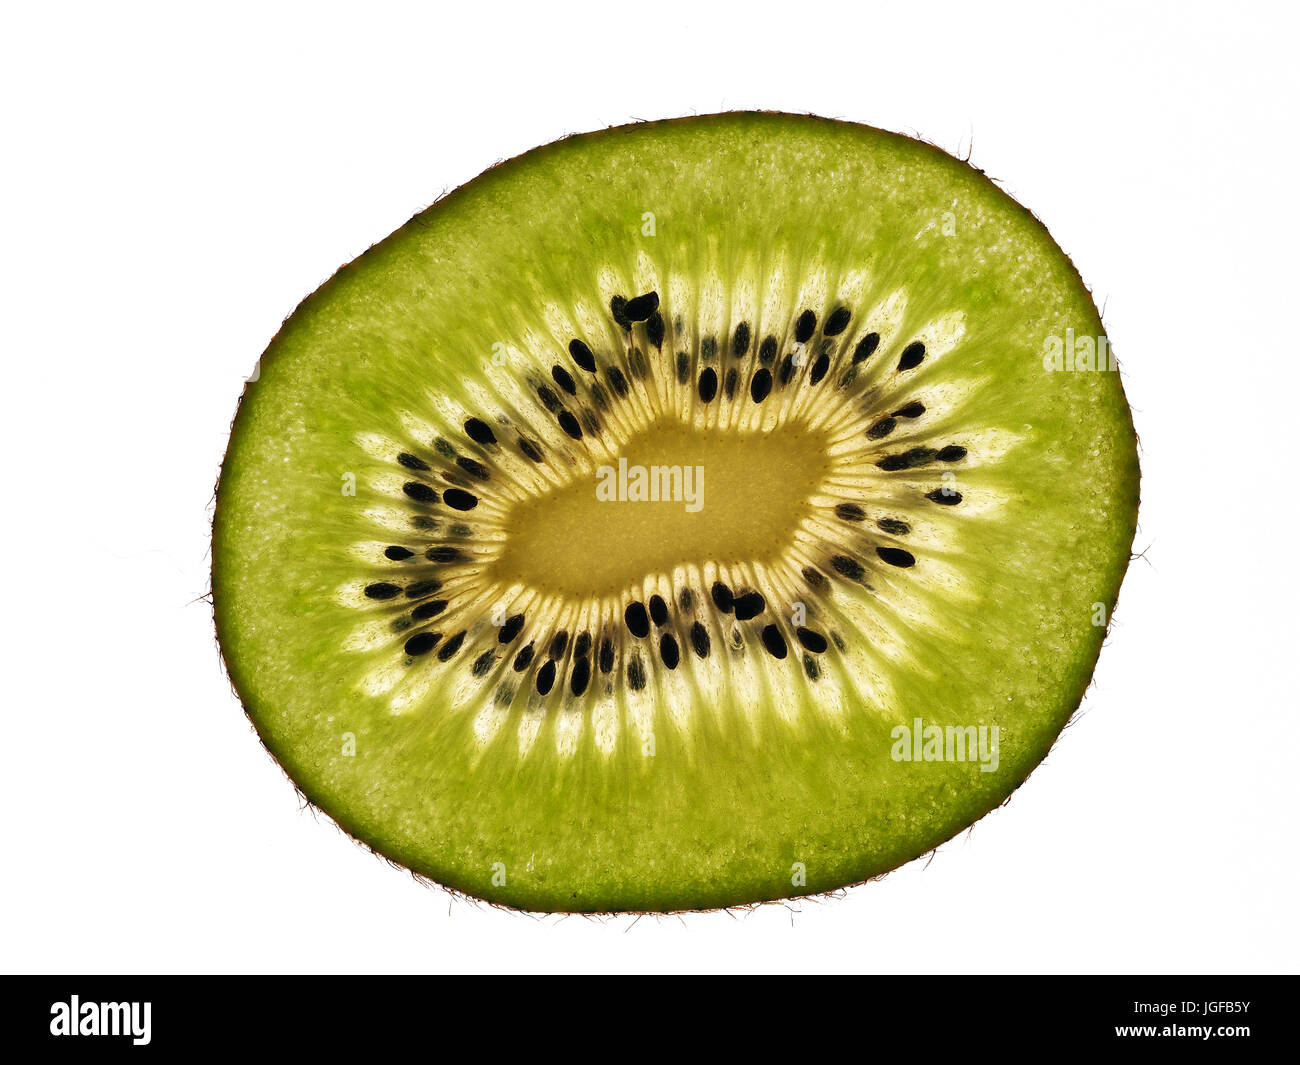 Kiwi slices on the white background Stock Photo